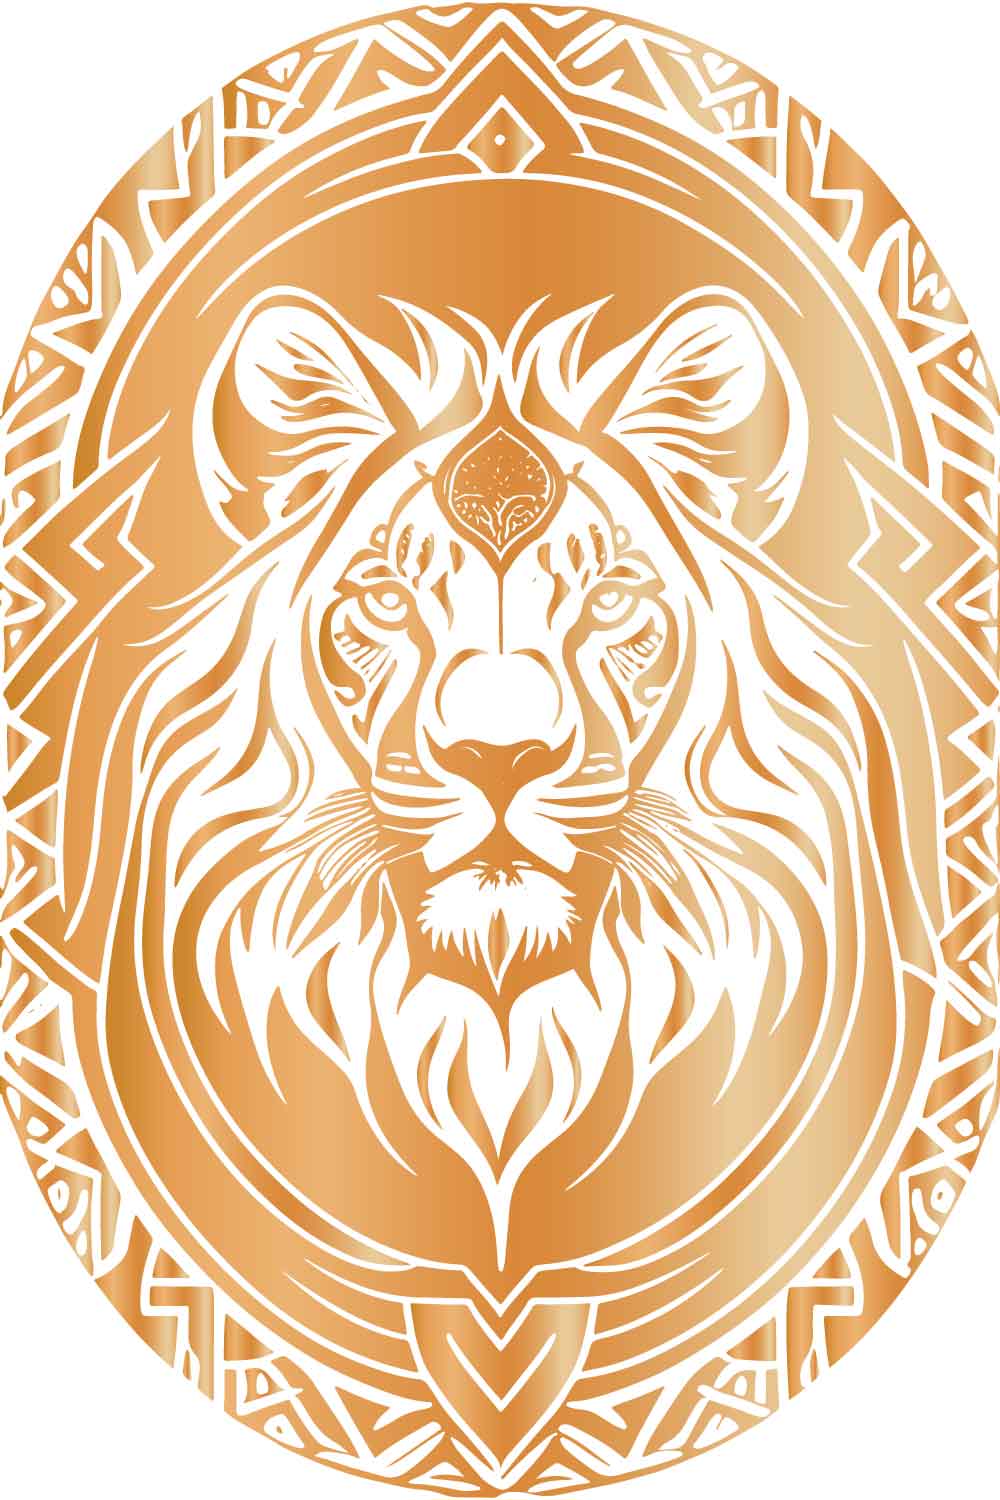 5 Lion Faces Editable Vector Illustration Bundle Set pinterest preview image.